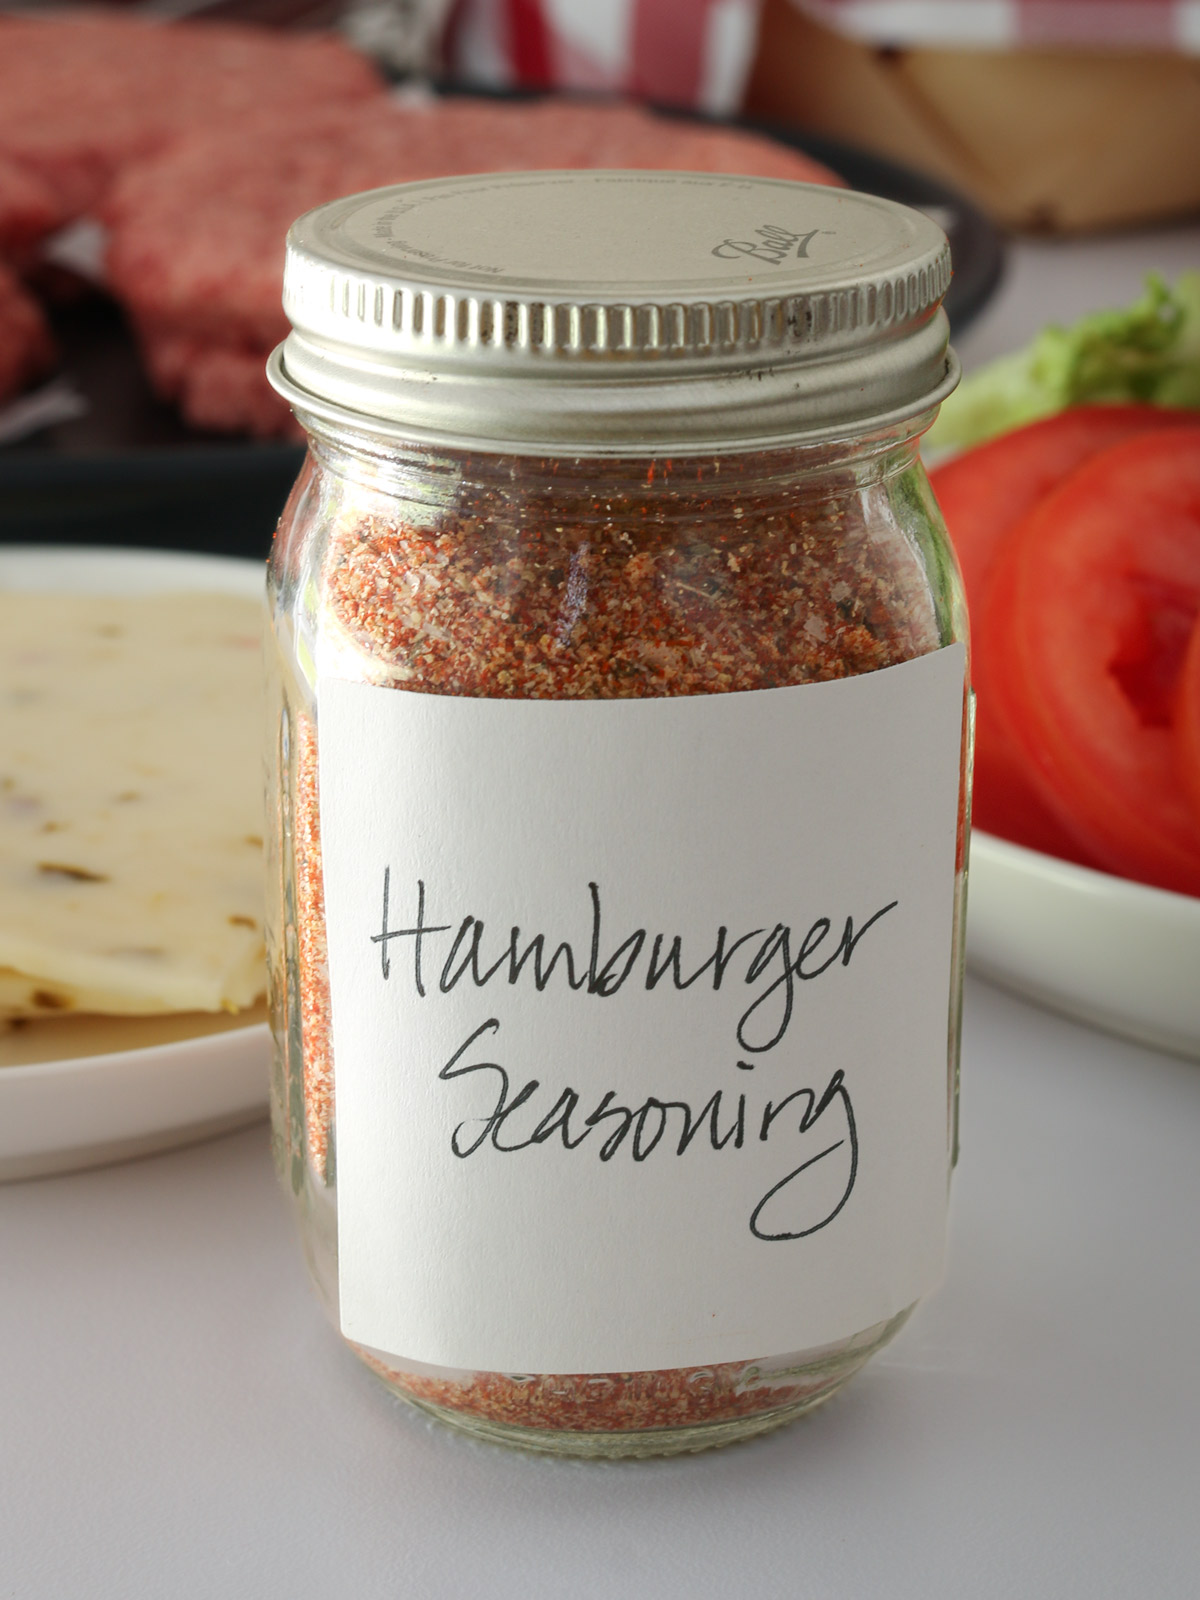 Hamburger Seasoning Recipe - Seasoning Mix - Good Cheap Eats